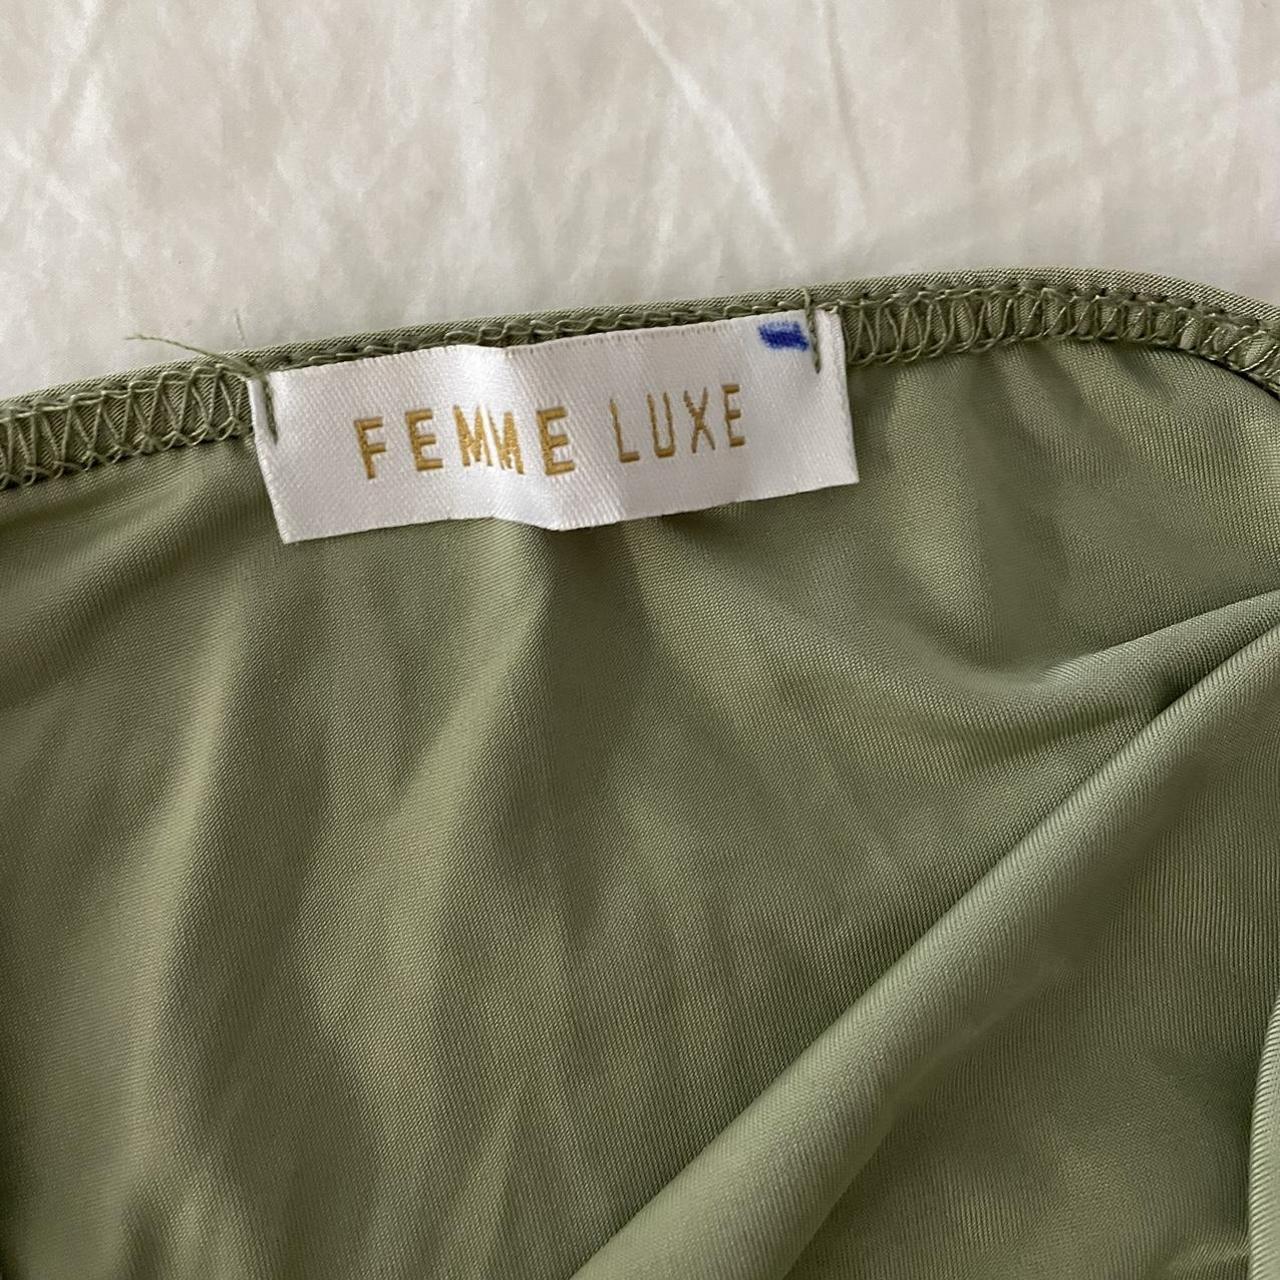 Femme Luxe Women's Green and Khaki Dress (2)